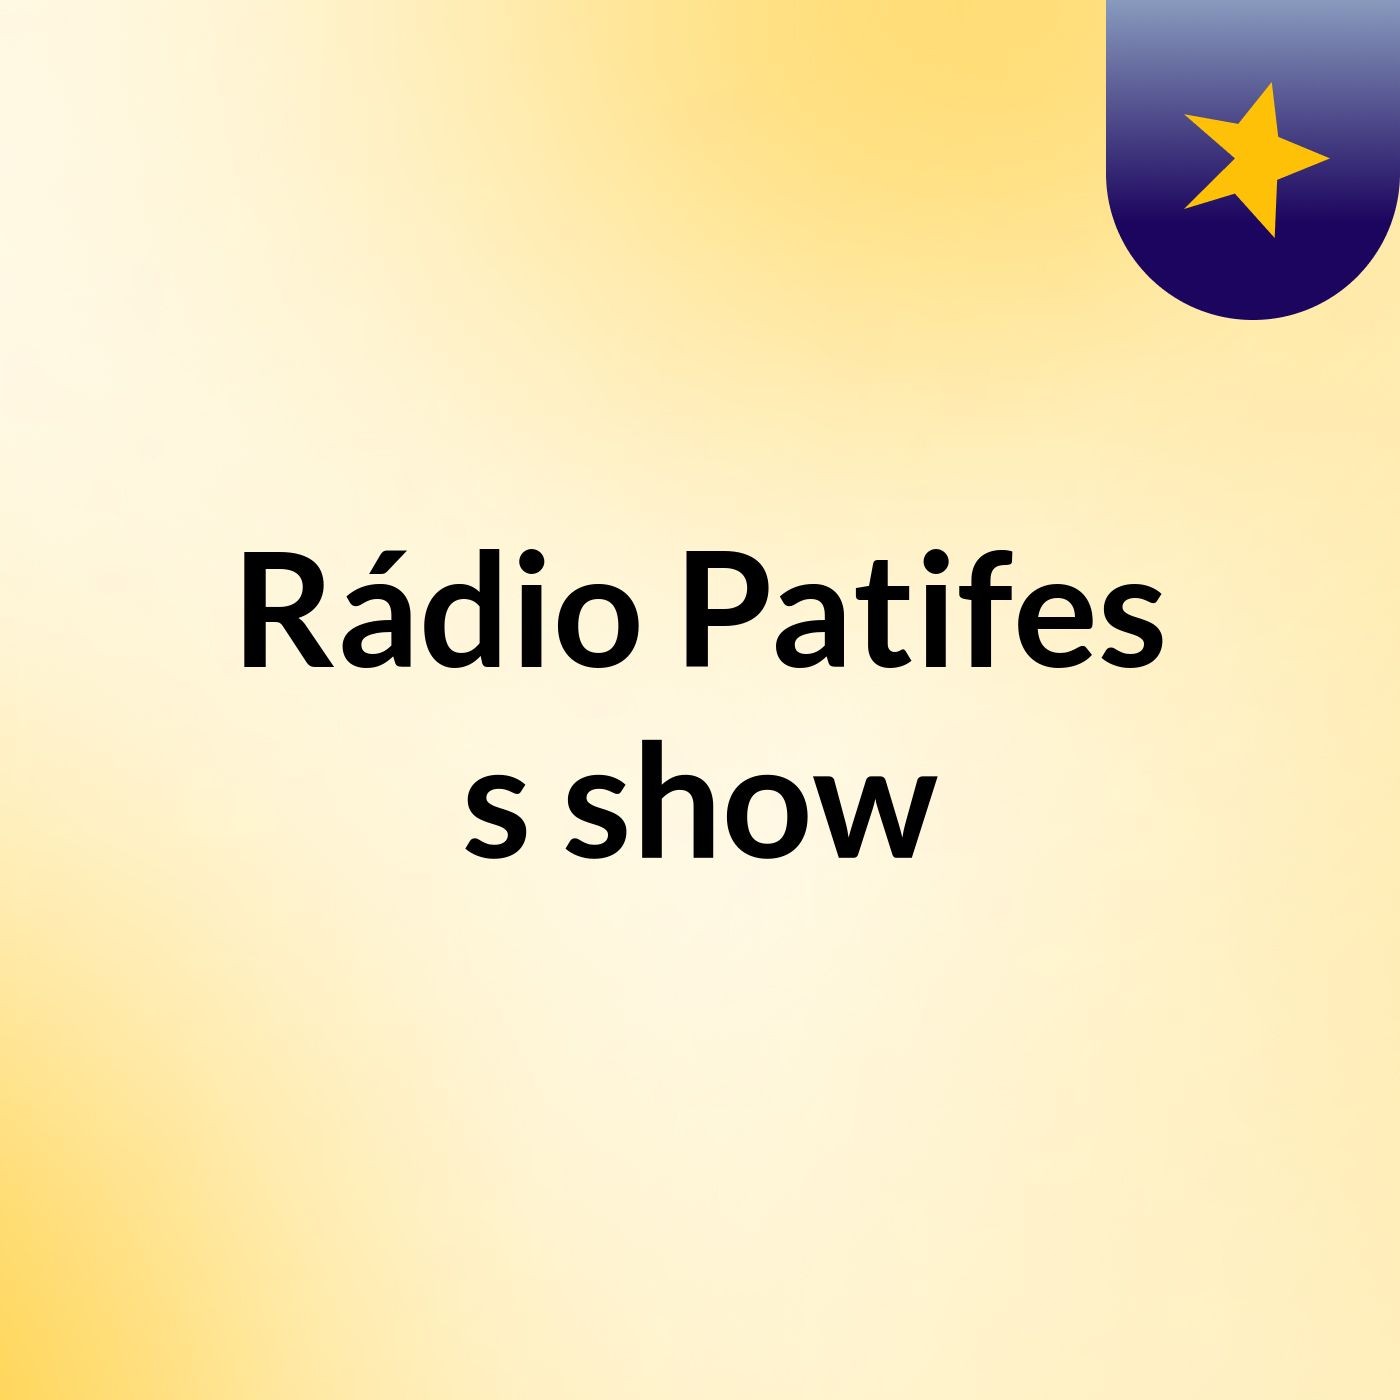 Rádio Patifes's show